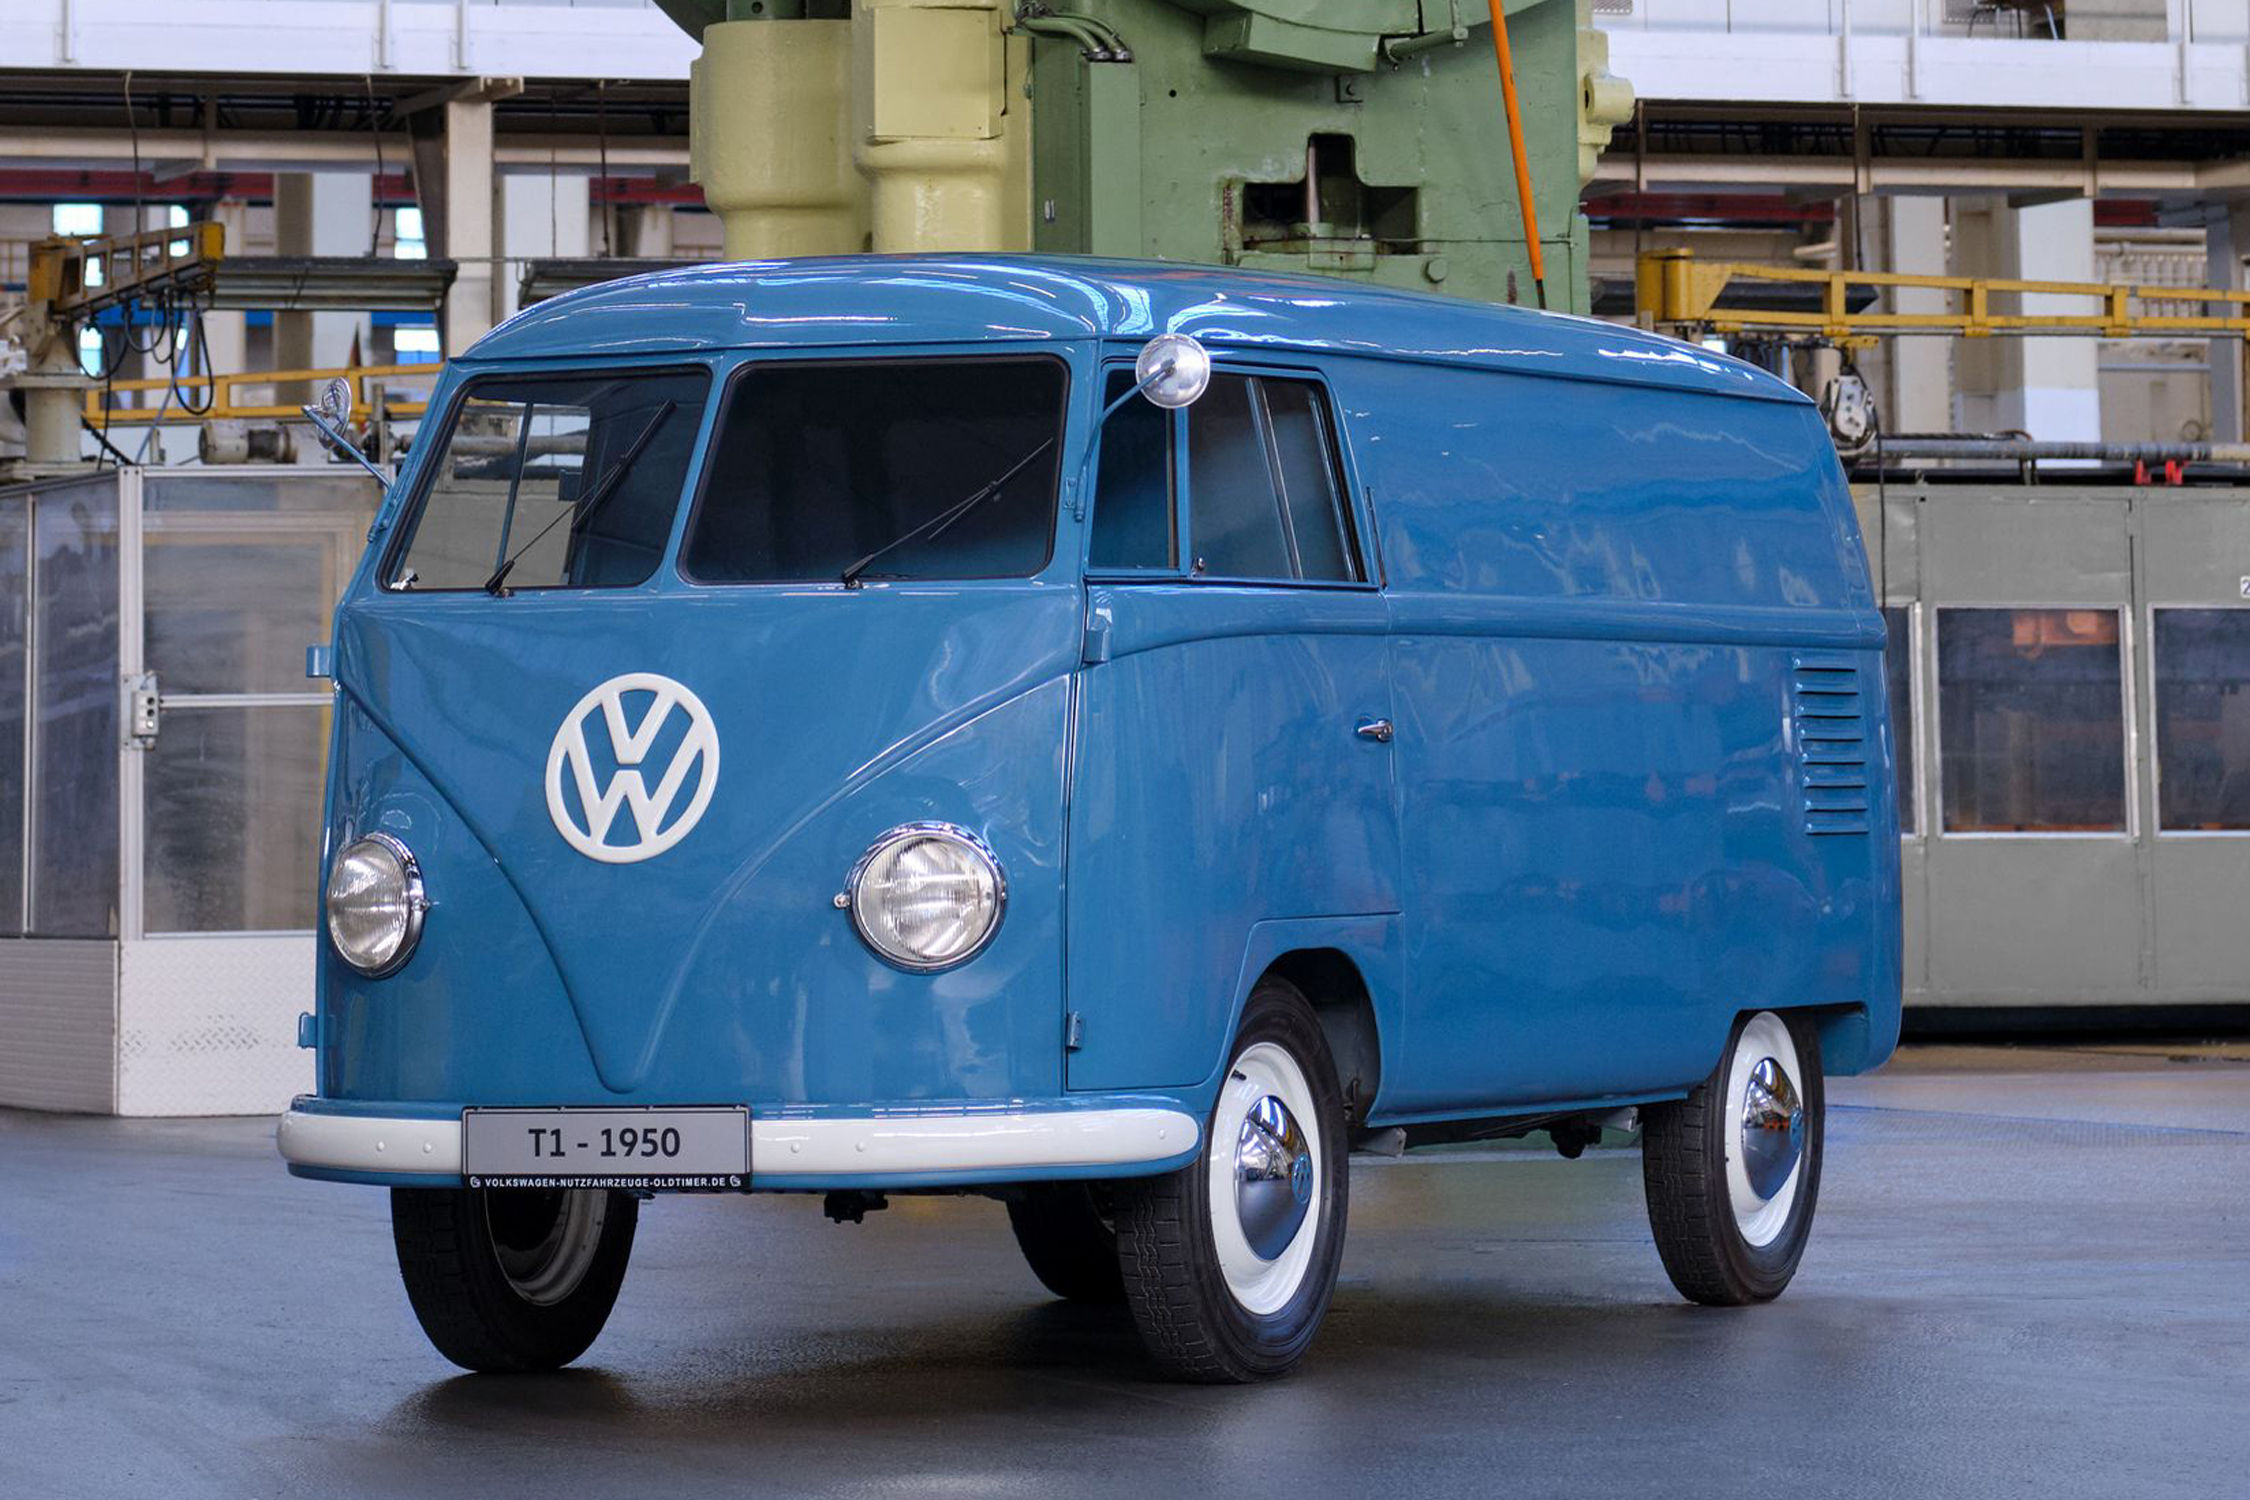 En 70 ans, le VW Combi Transporter a sérieusement évolué - Challenges